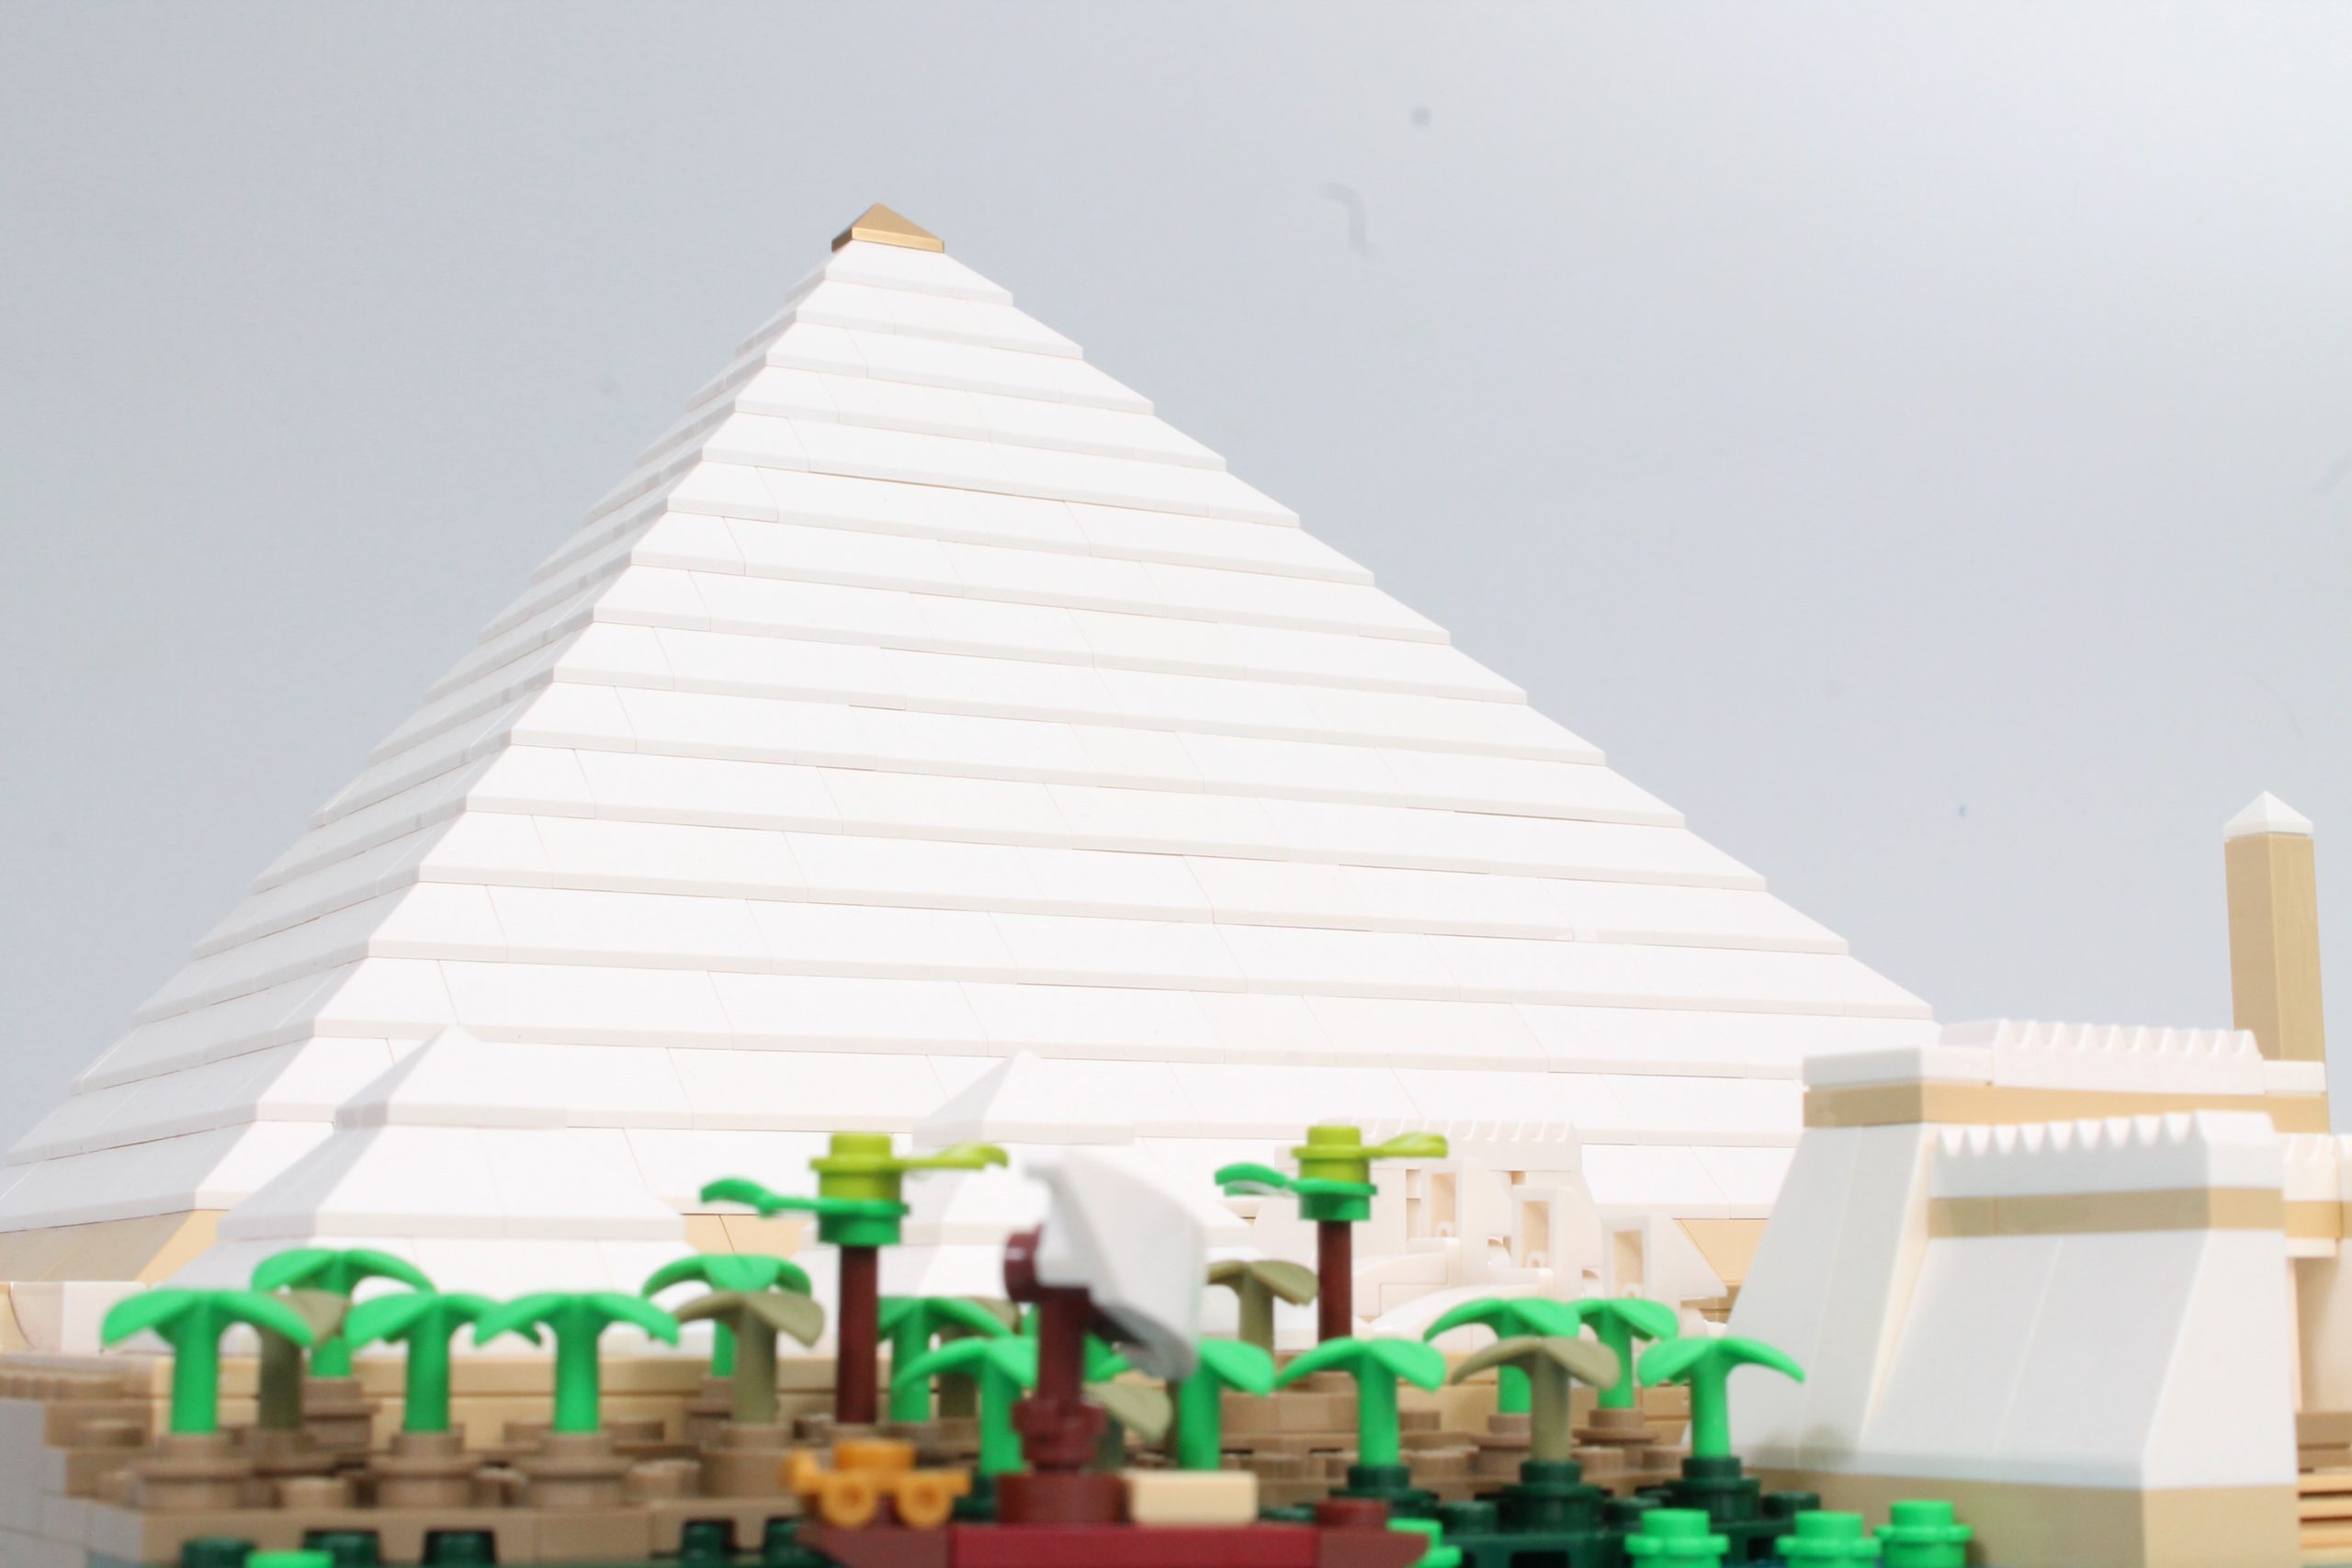 Lego La Grande pyramide de Gizeh : les offres